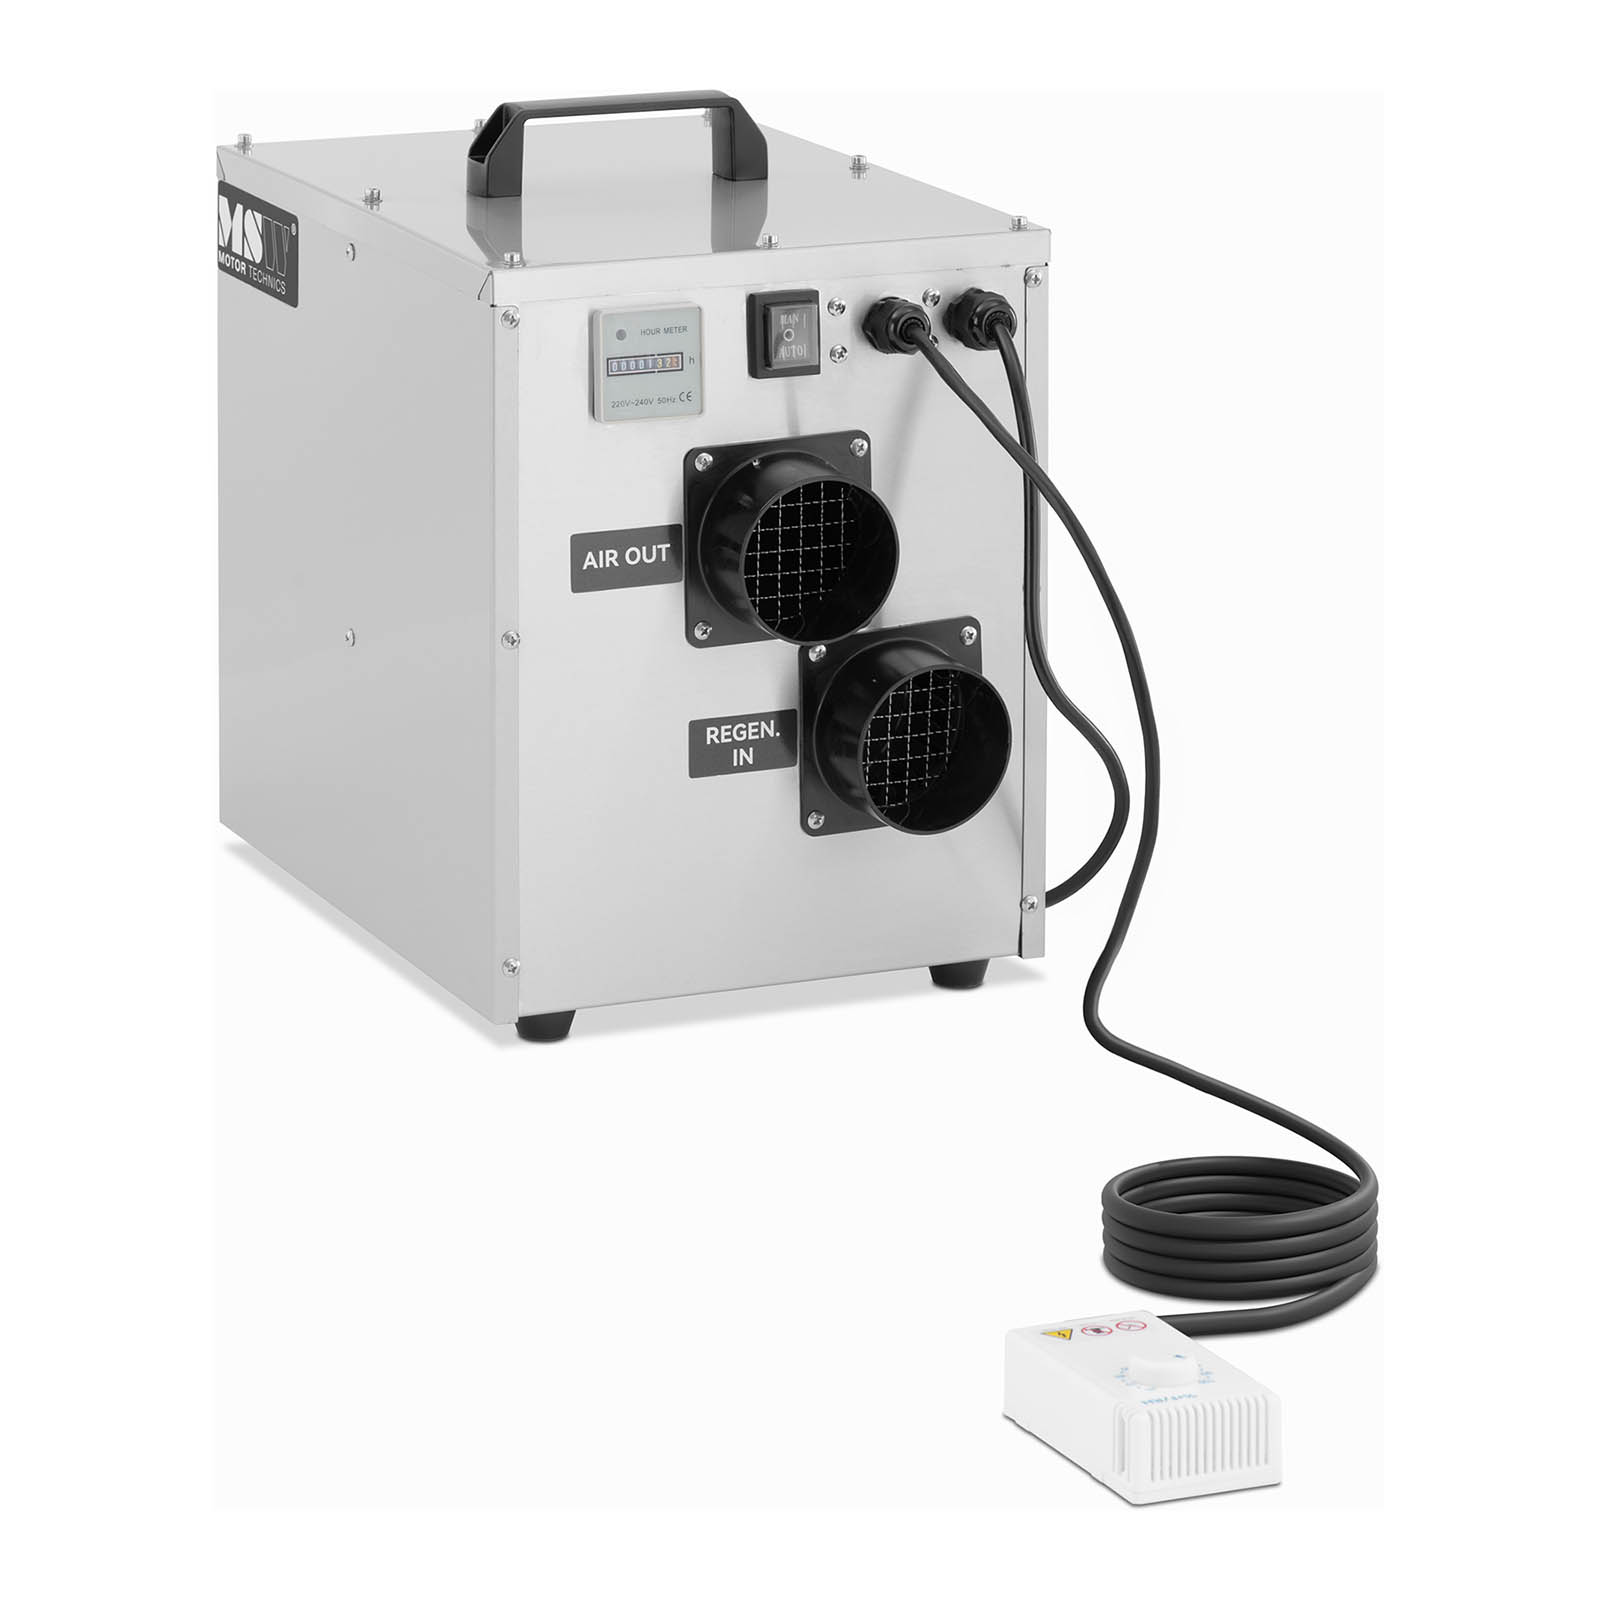 Desumidificador de adsorção - 100 m³/h - 9 l/dia